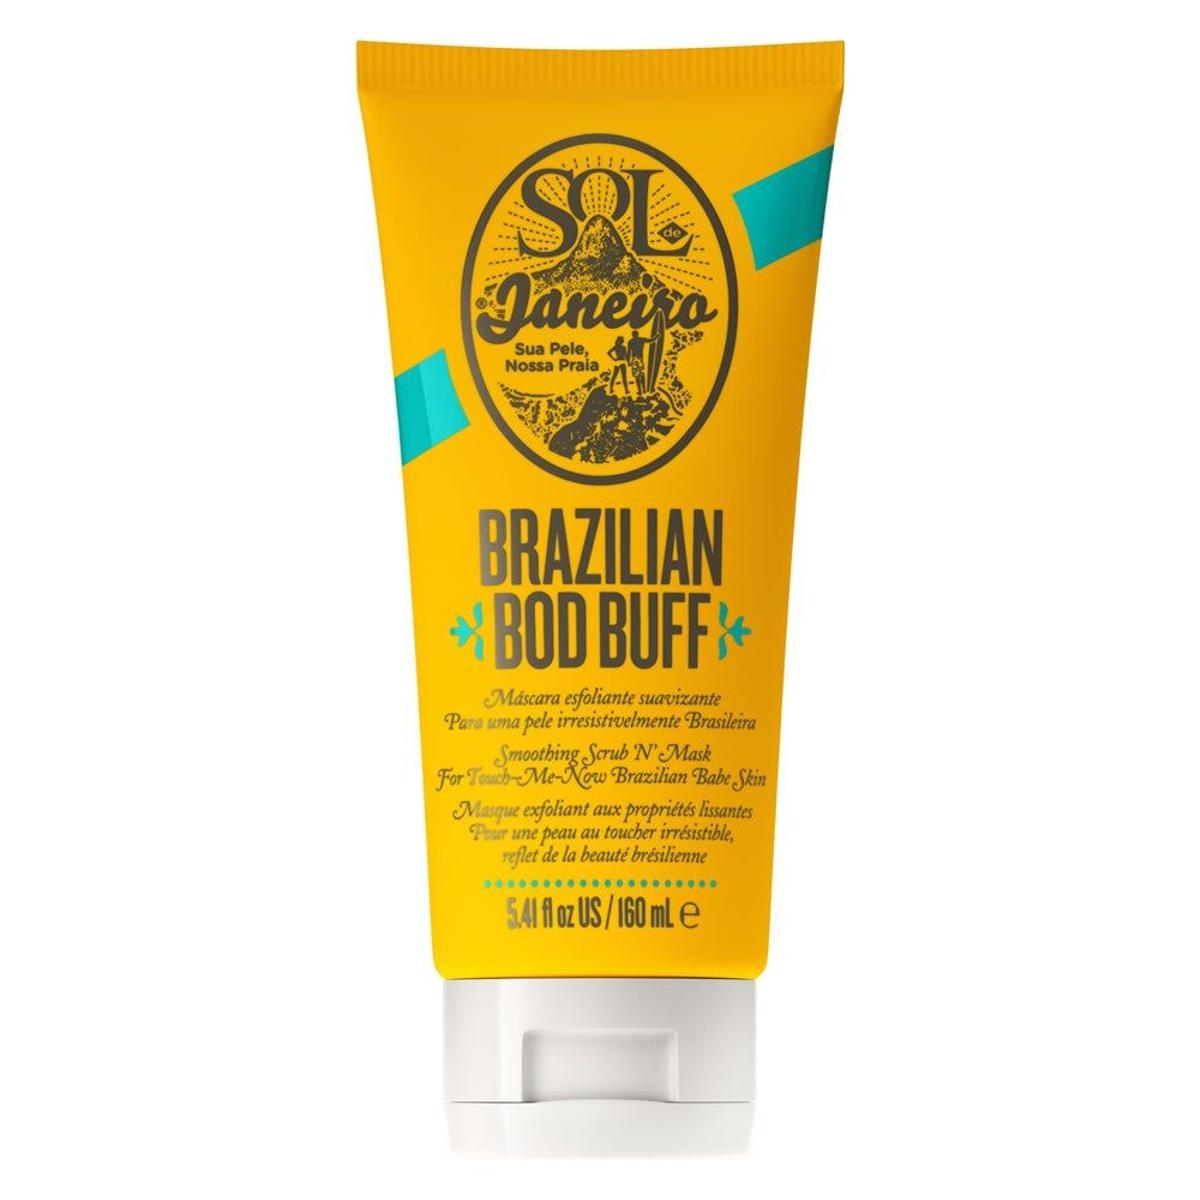 Mascarilla exfoliante Brazilian Bod Buff Smoothing Scrub 'N' Mask de Sol Janeiro (Precio: 21,95 euros). Disponible solo en Sephora.